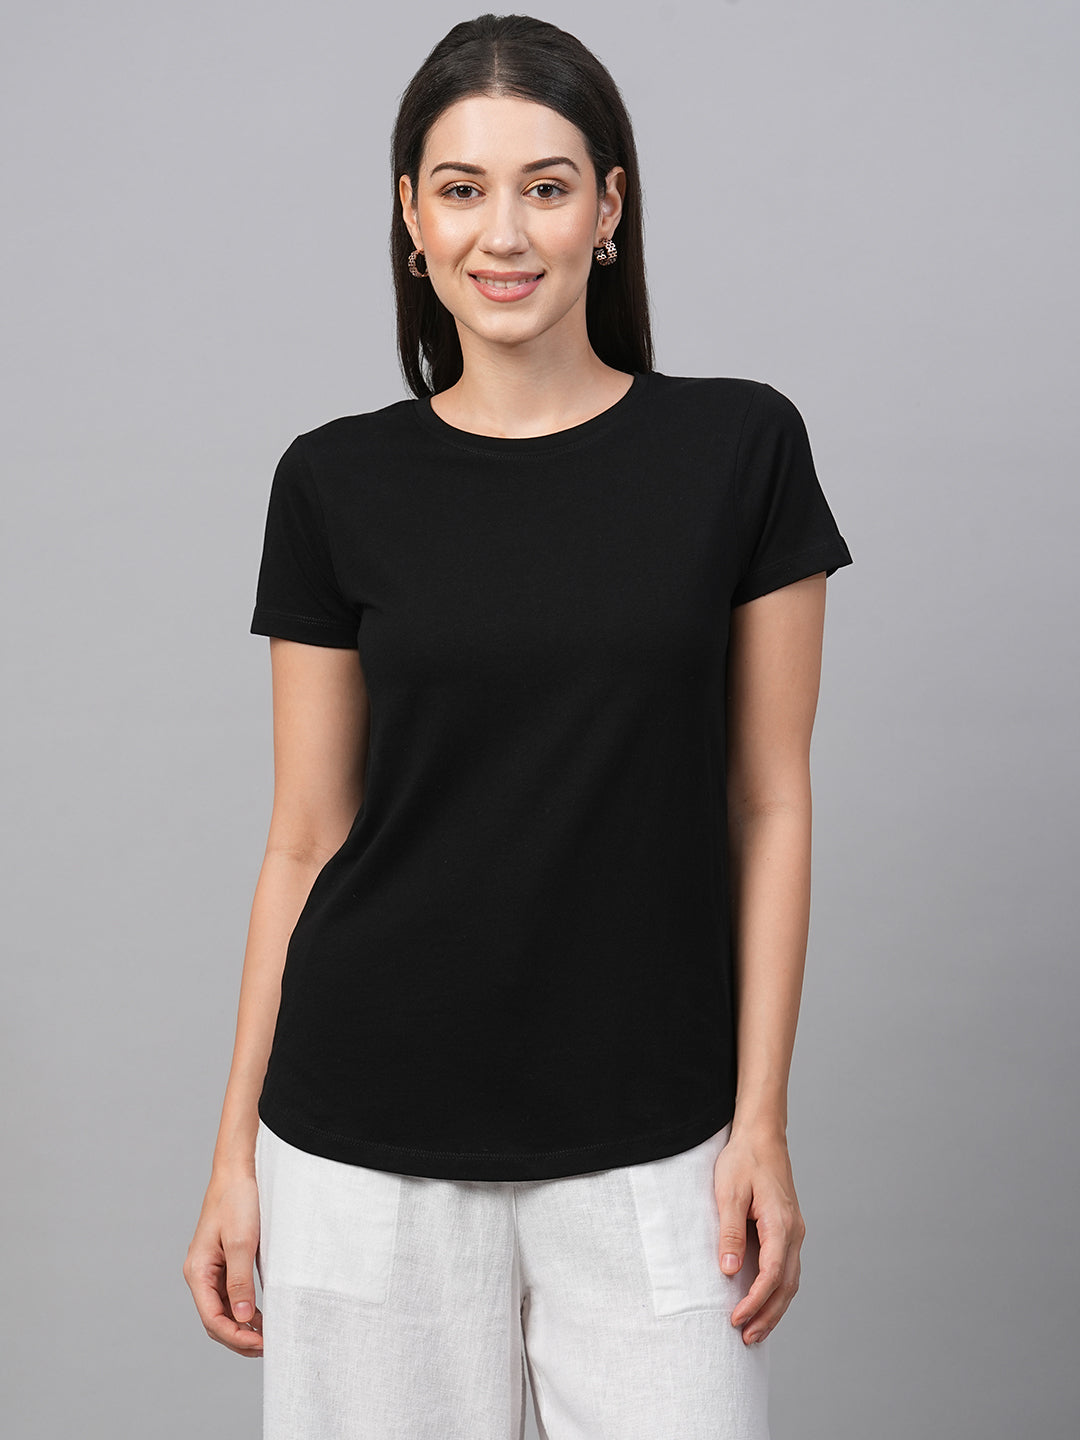 Women's Black Cotton Slim Fit Tshirt